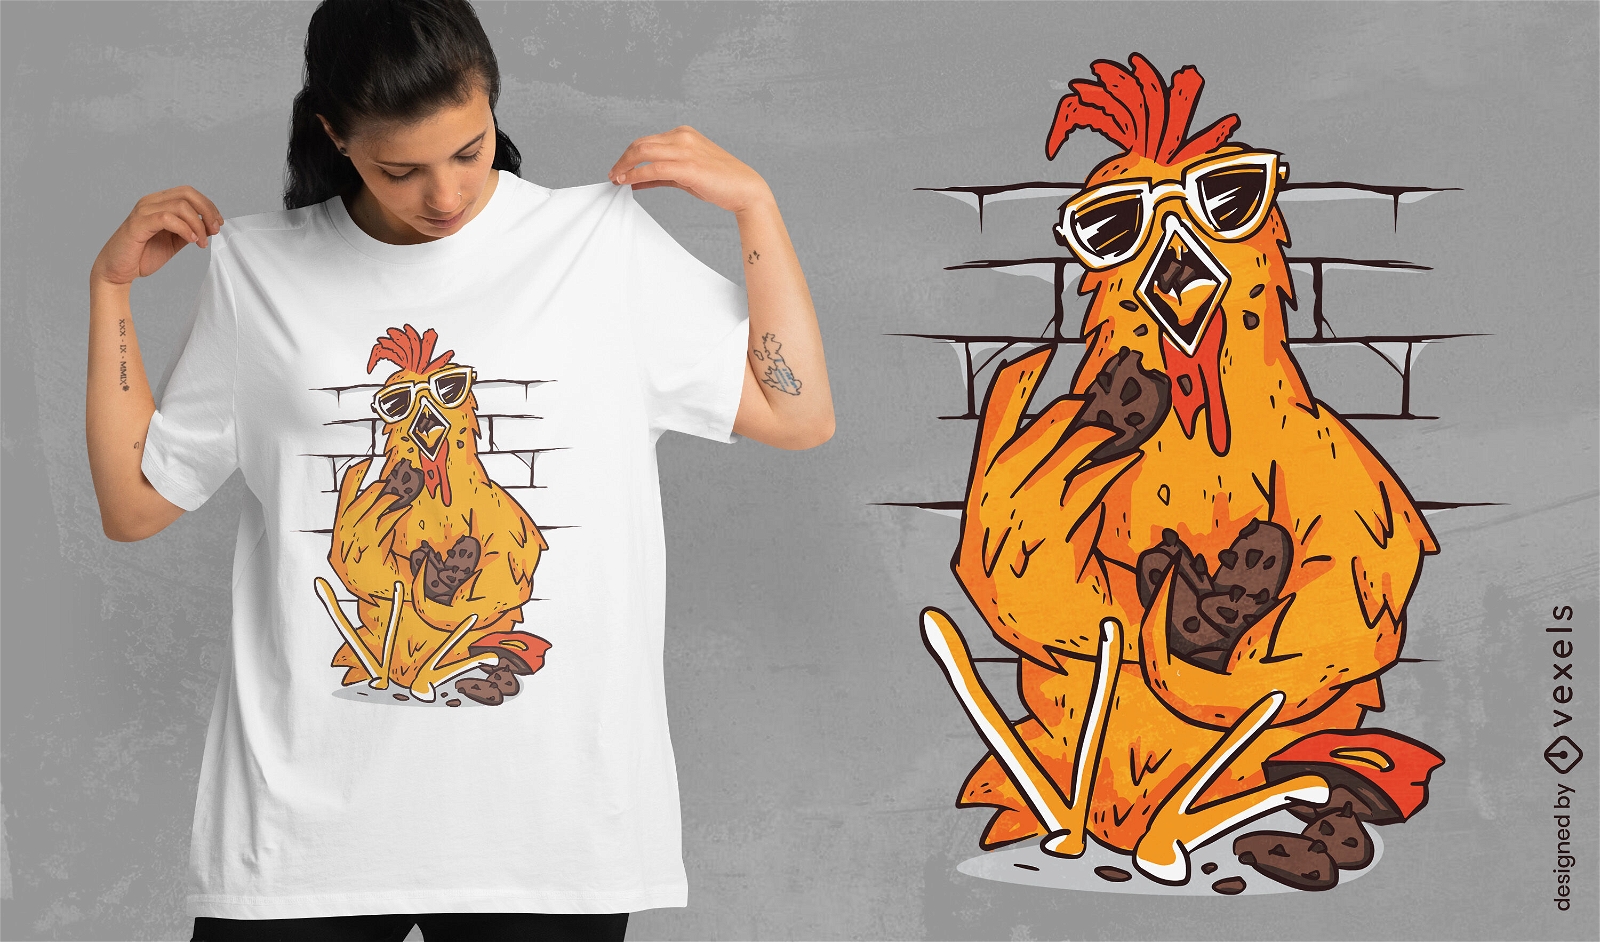 Huhn, das Pl?tzchen-T-Shirt Design isst